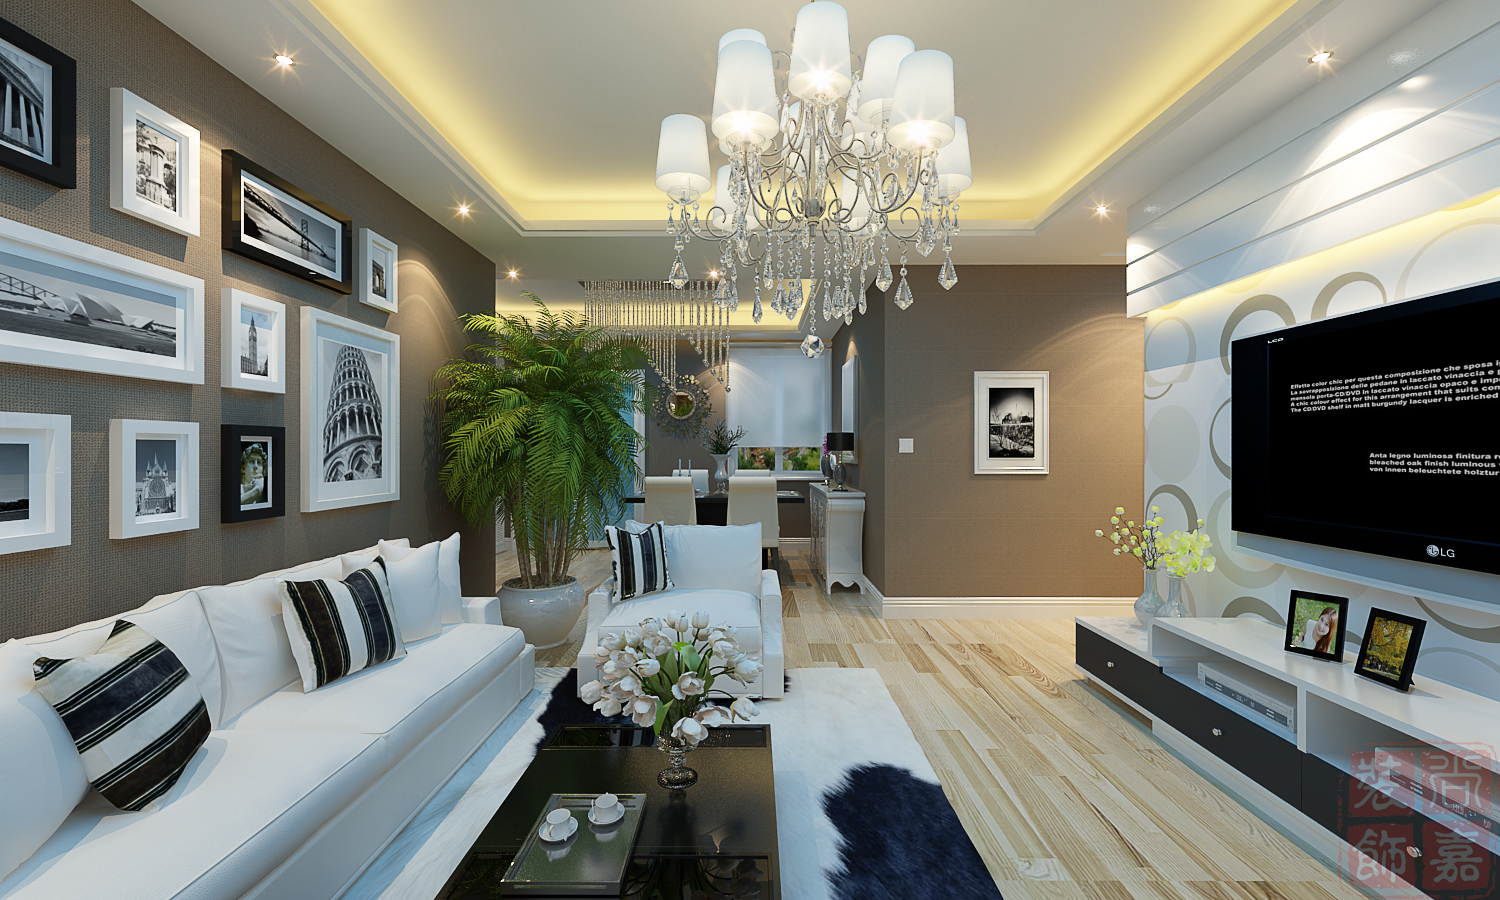 客厅图片来自郑州尚嘉装饰工程有限公司在天骄华庭B2户型89平方方案的分享